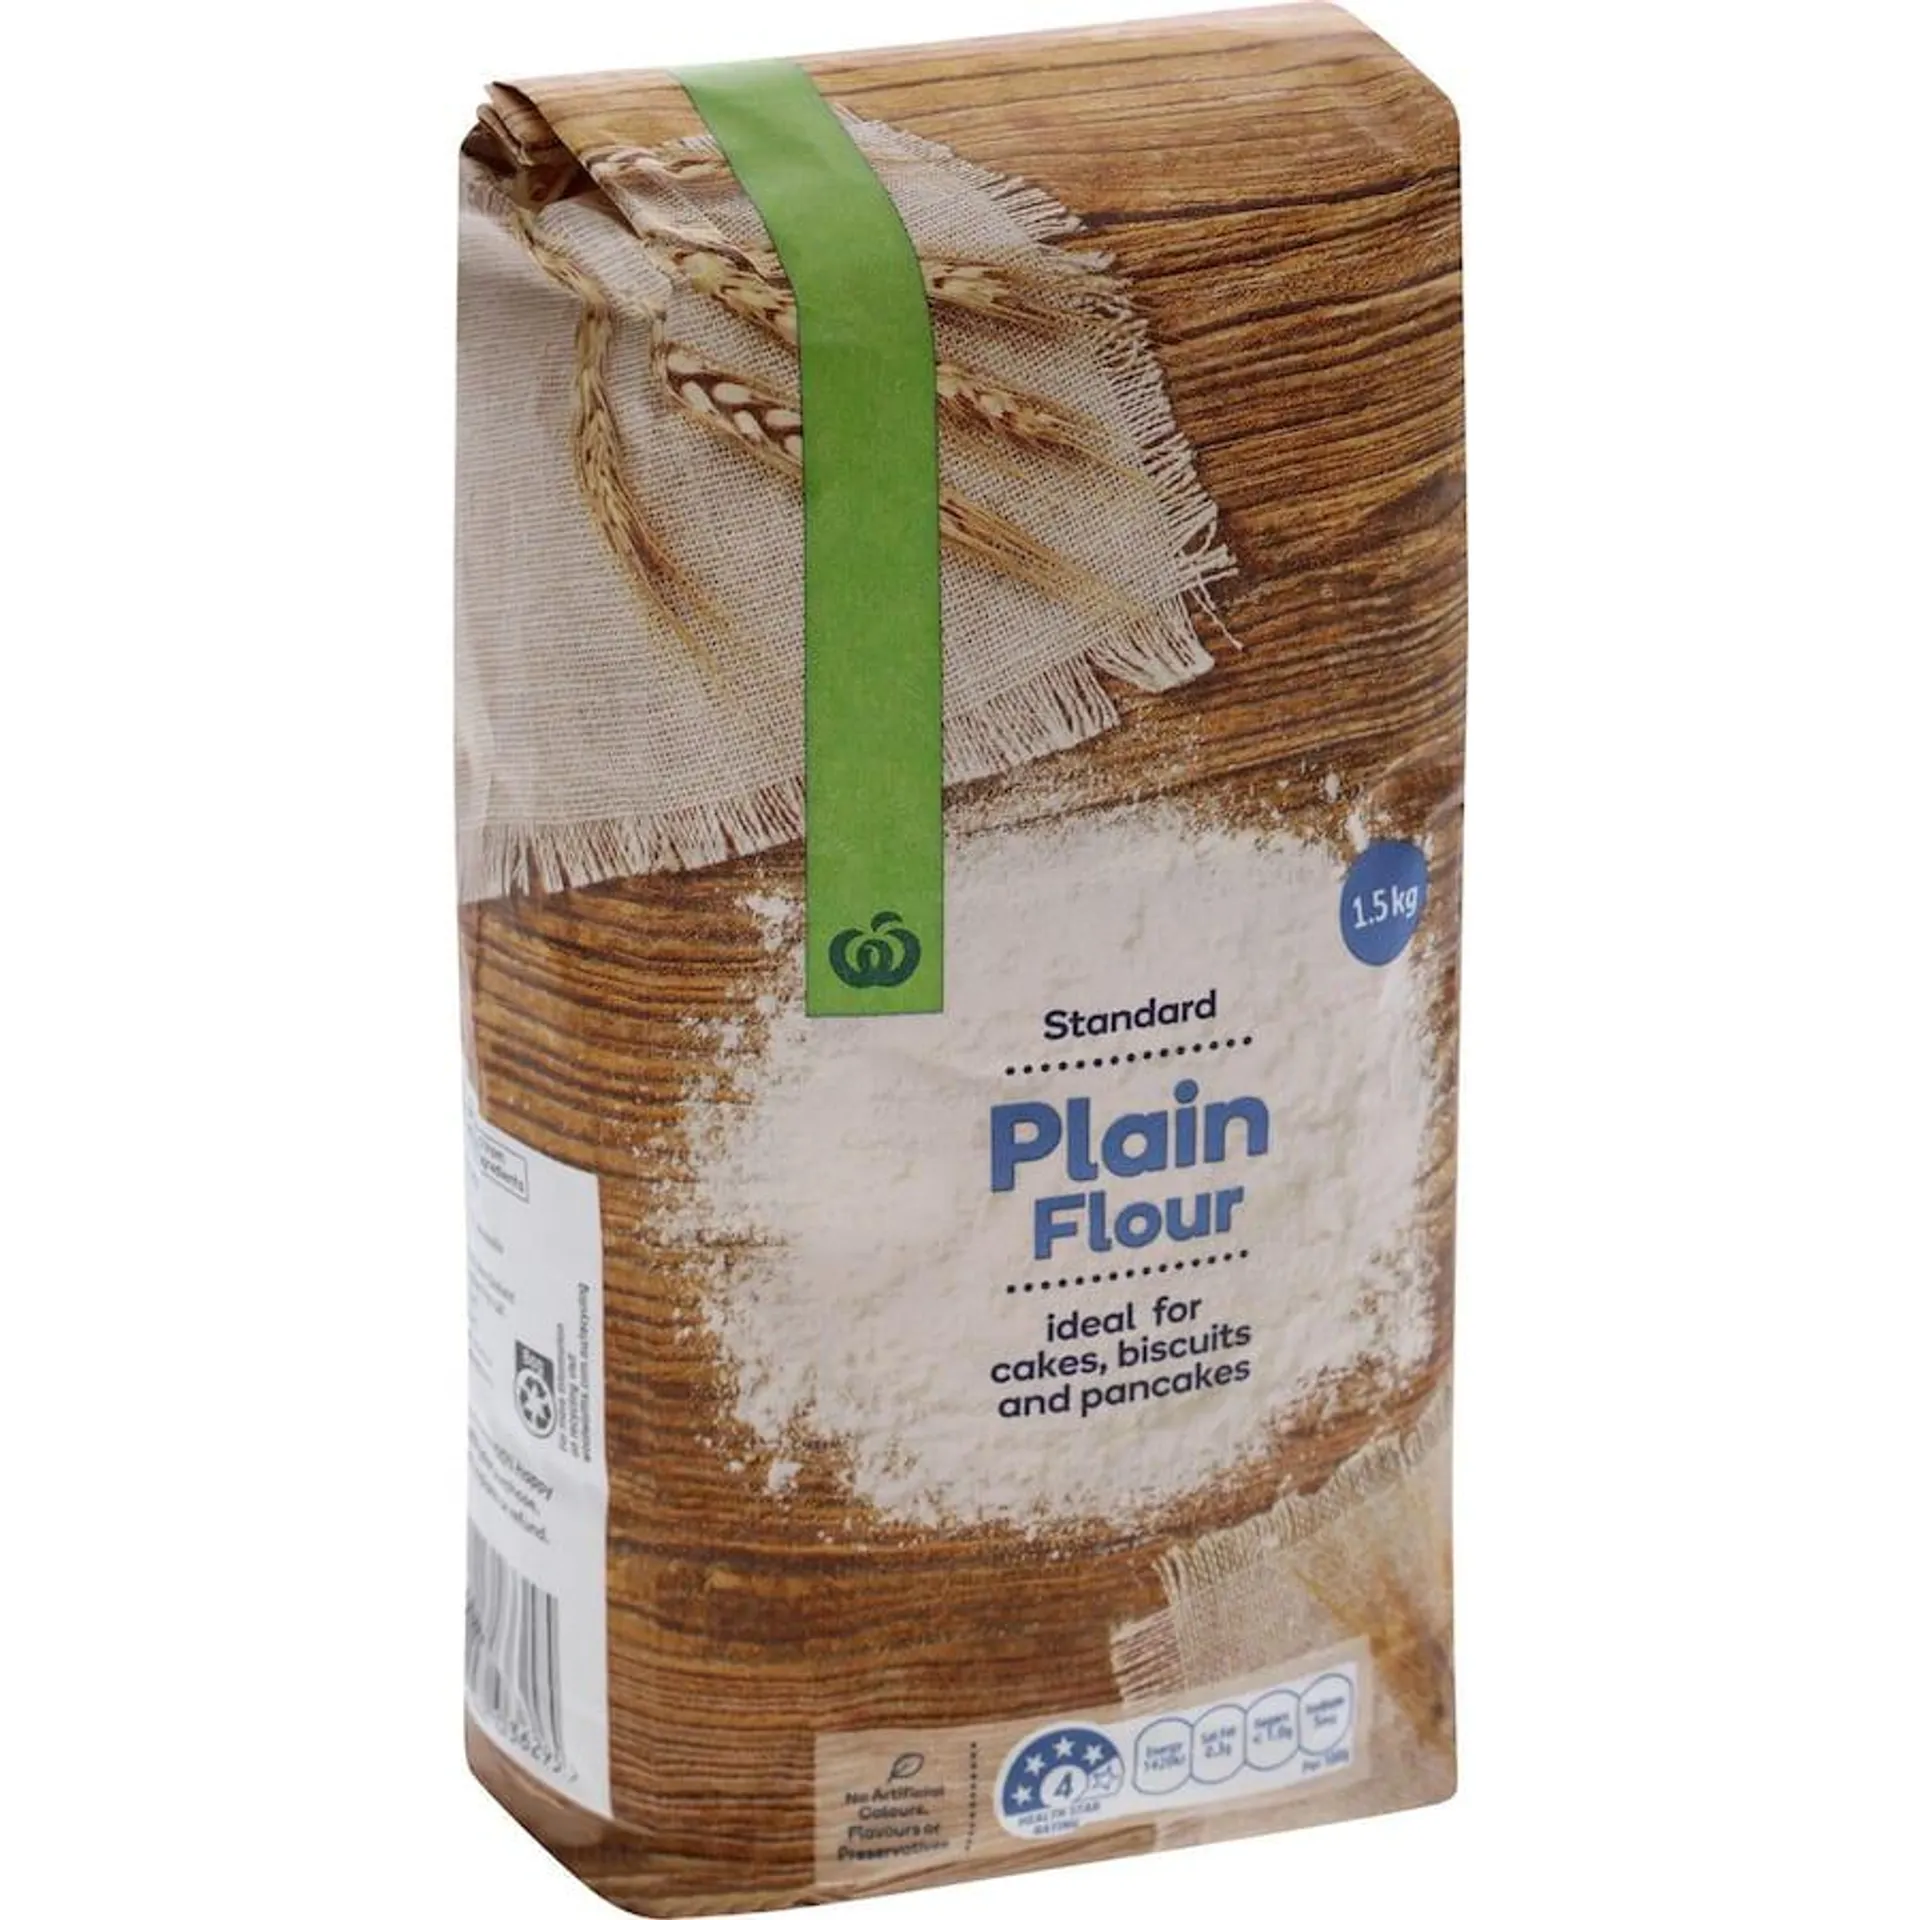 Woolworths Plain Flour